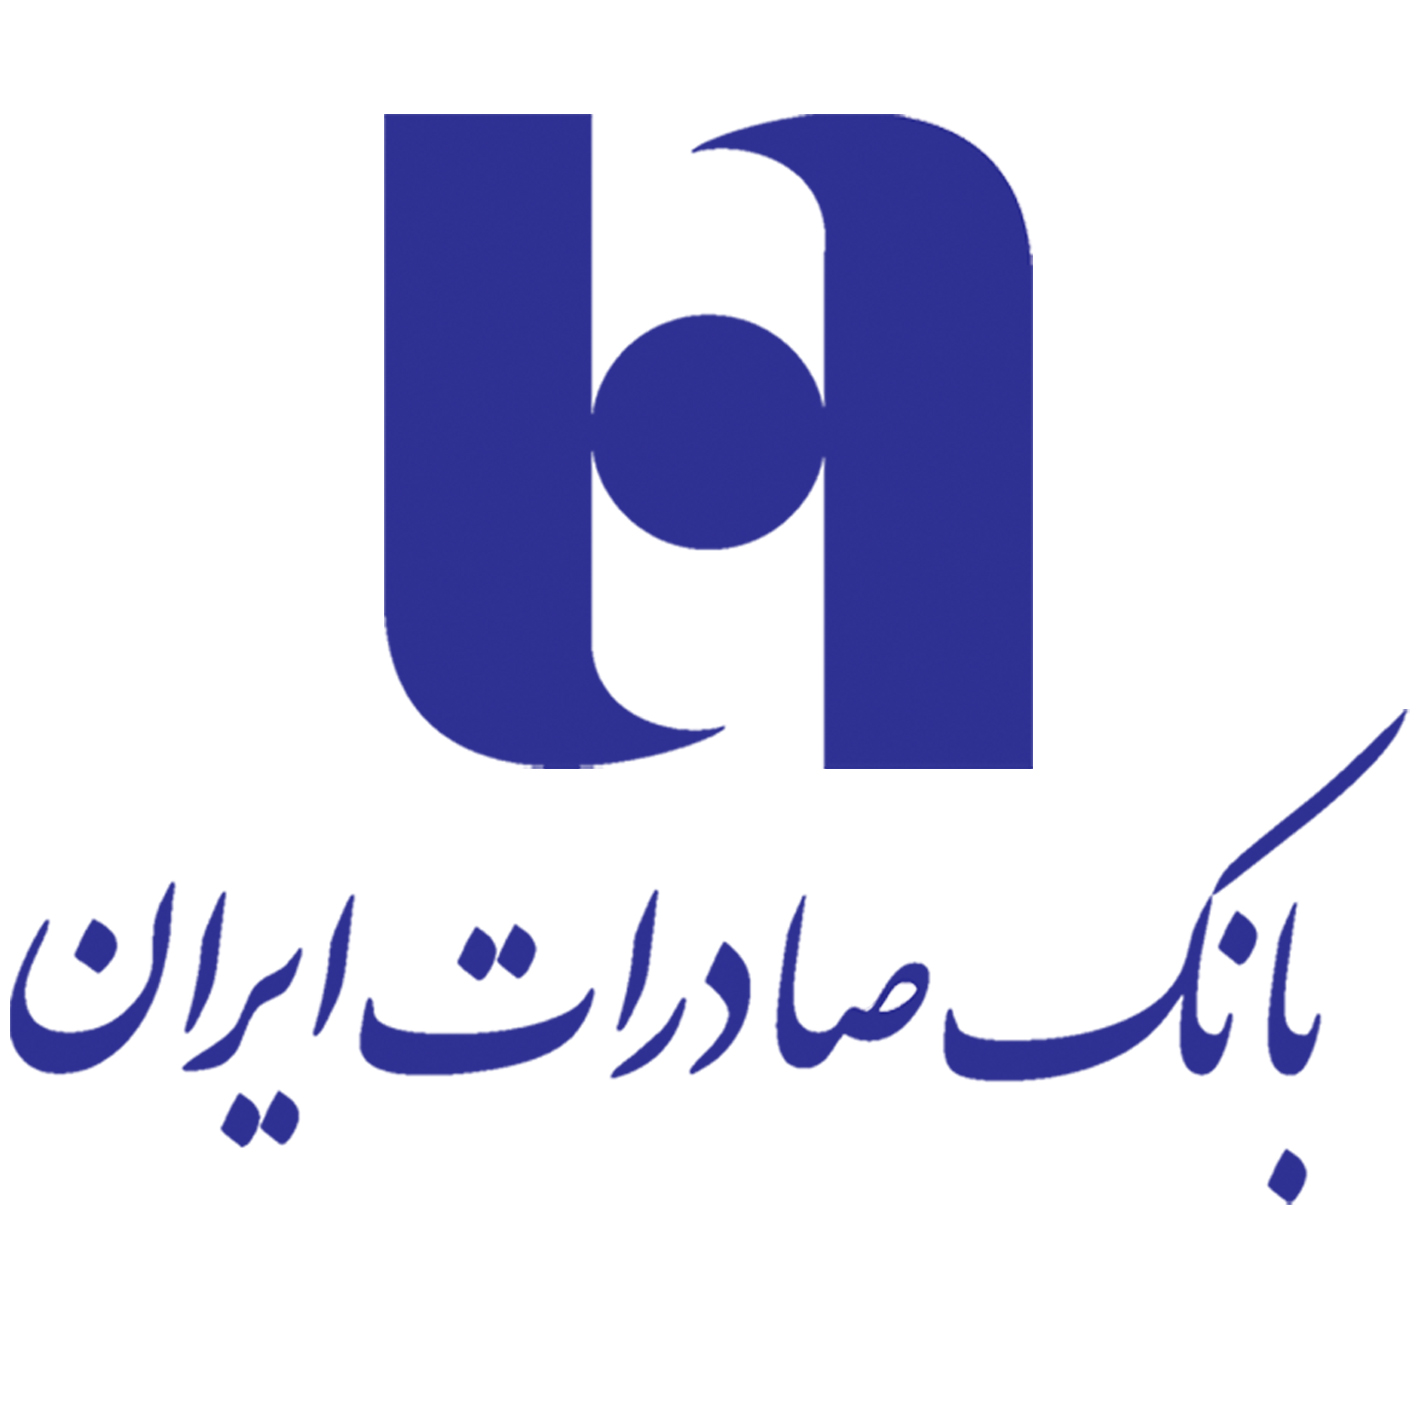 تمرکز مدیرعامل بانک صادرات ایران بر روی تکمیل  گزارشات حسابرسی بانک//تصمیم مدیرعامل صادرات برای RFRS